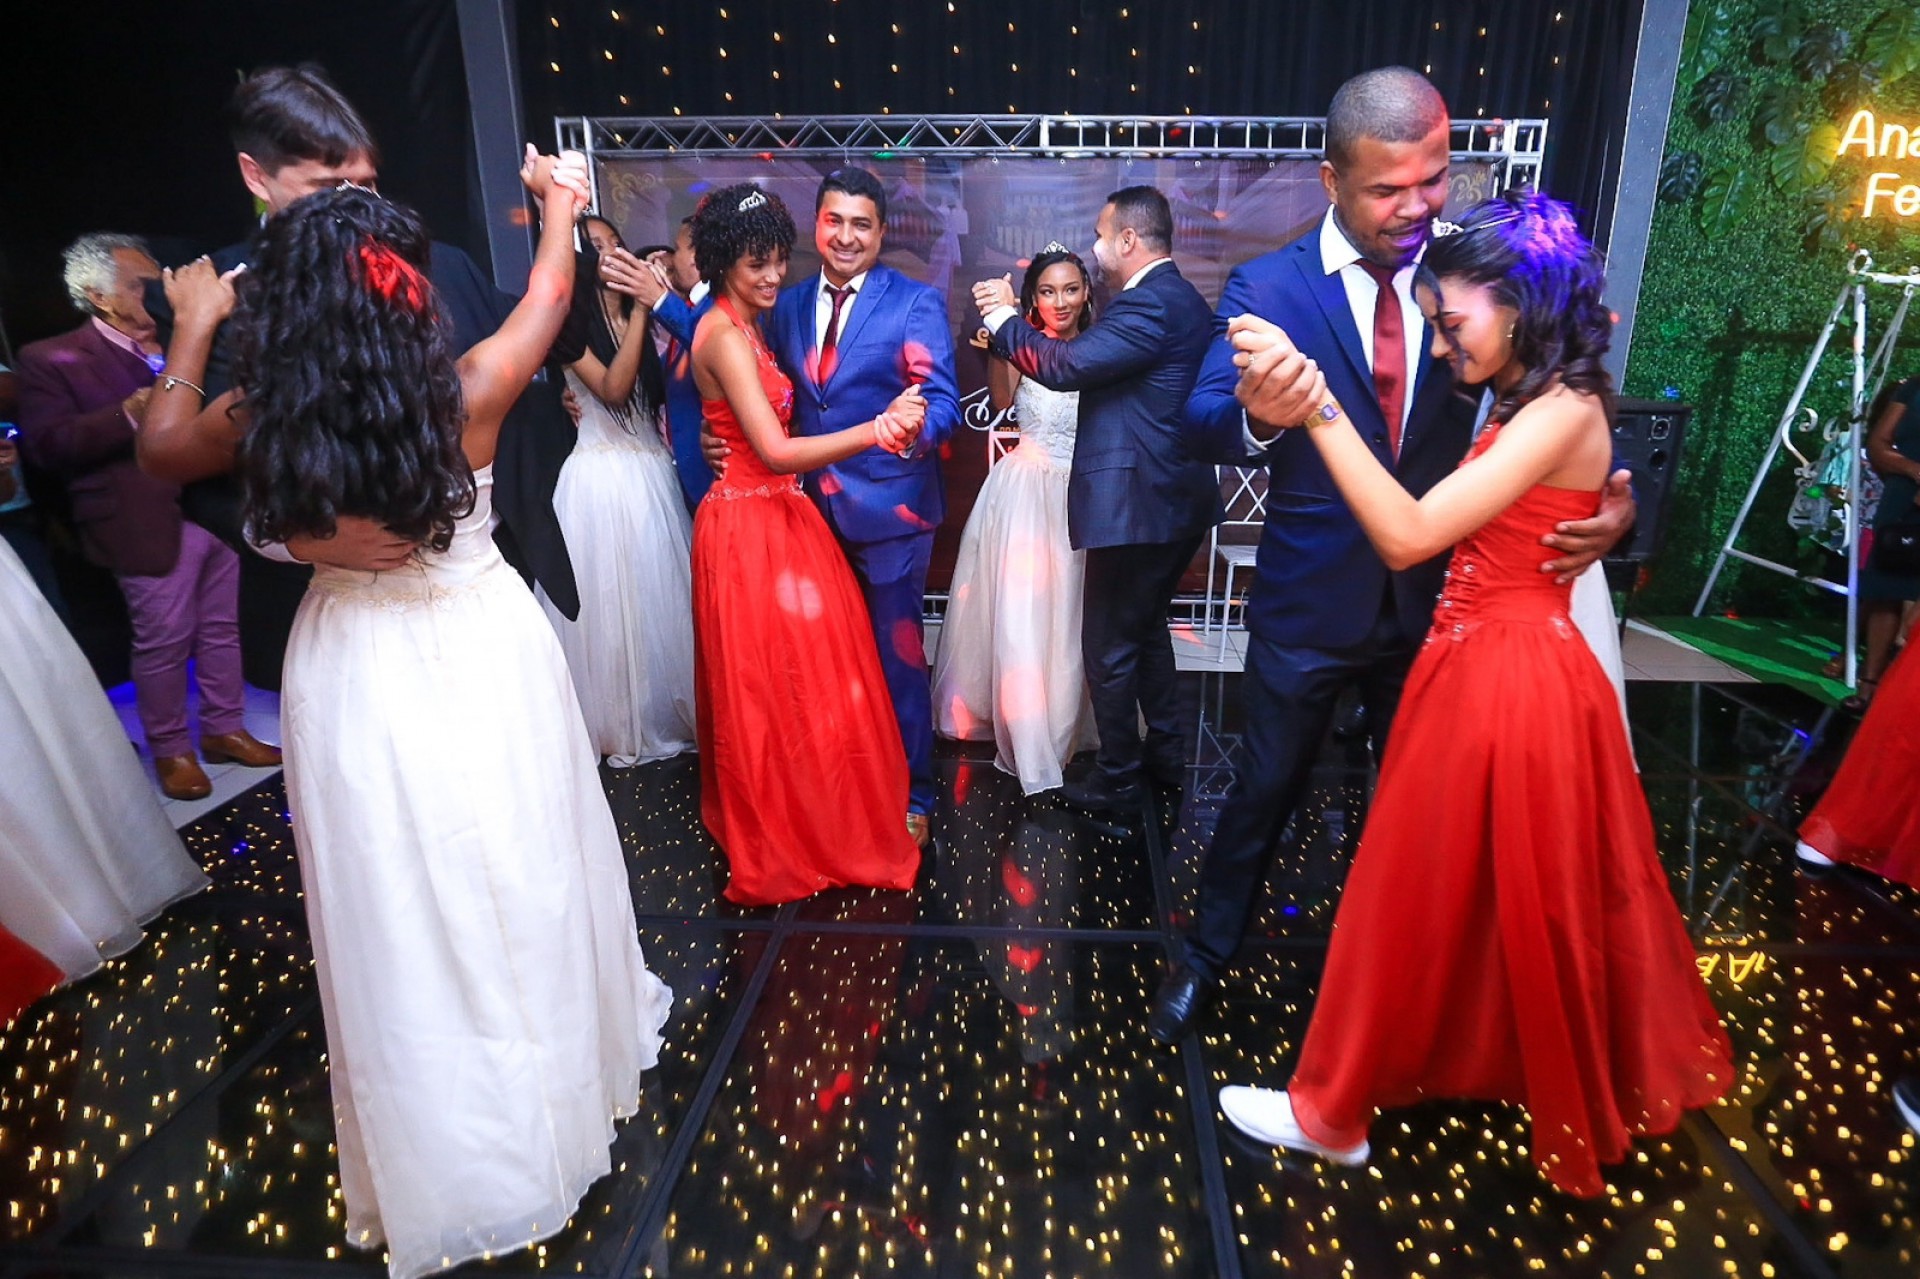 Durante o baile, as debutantes dançaram com os seus respectivos padrinhos - Rafael Barreto / PMBR